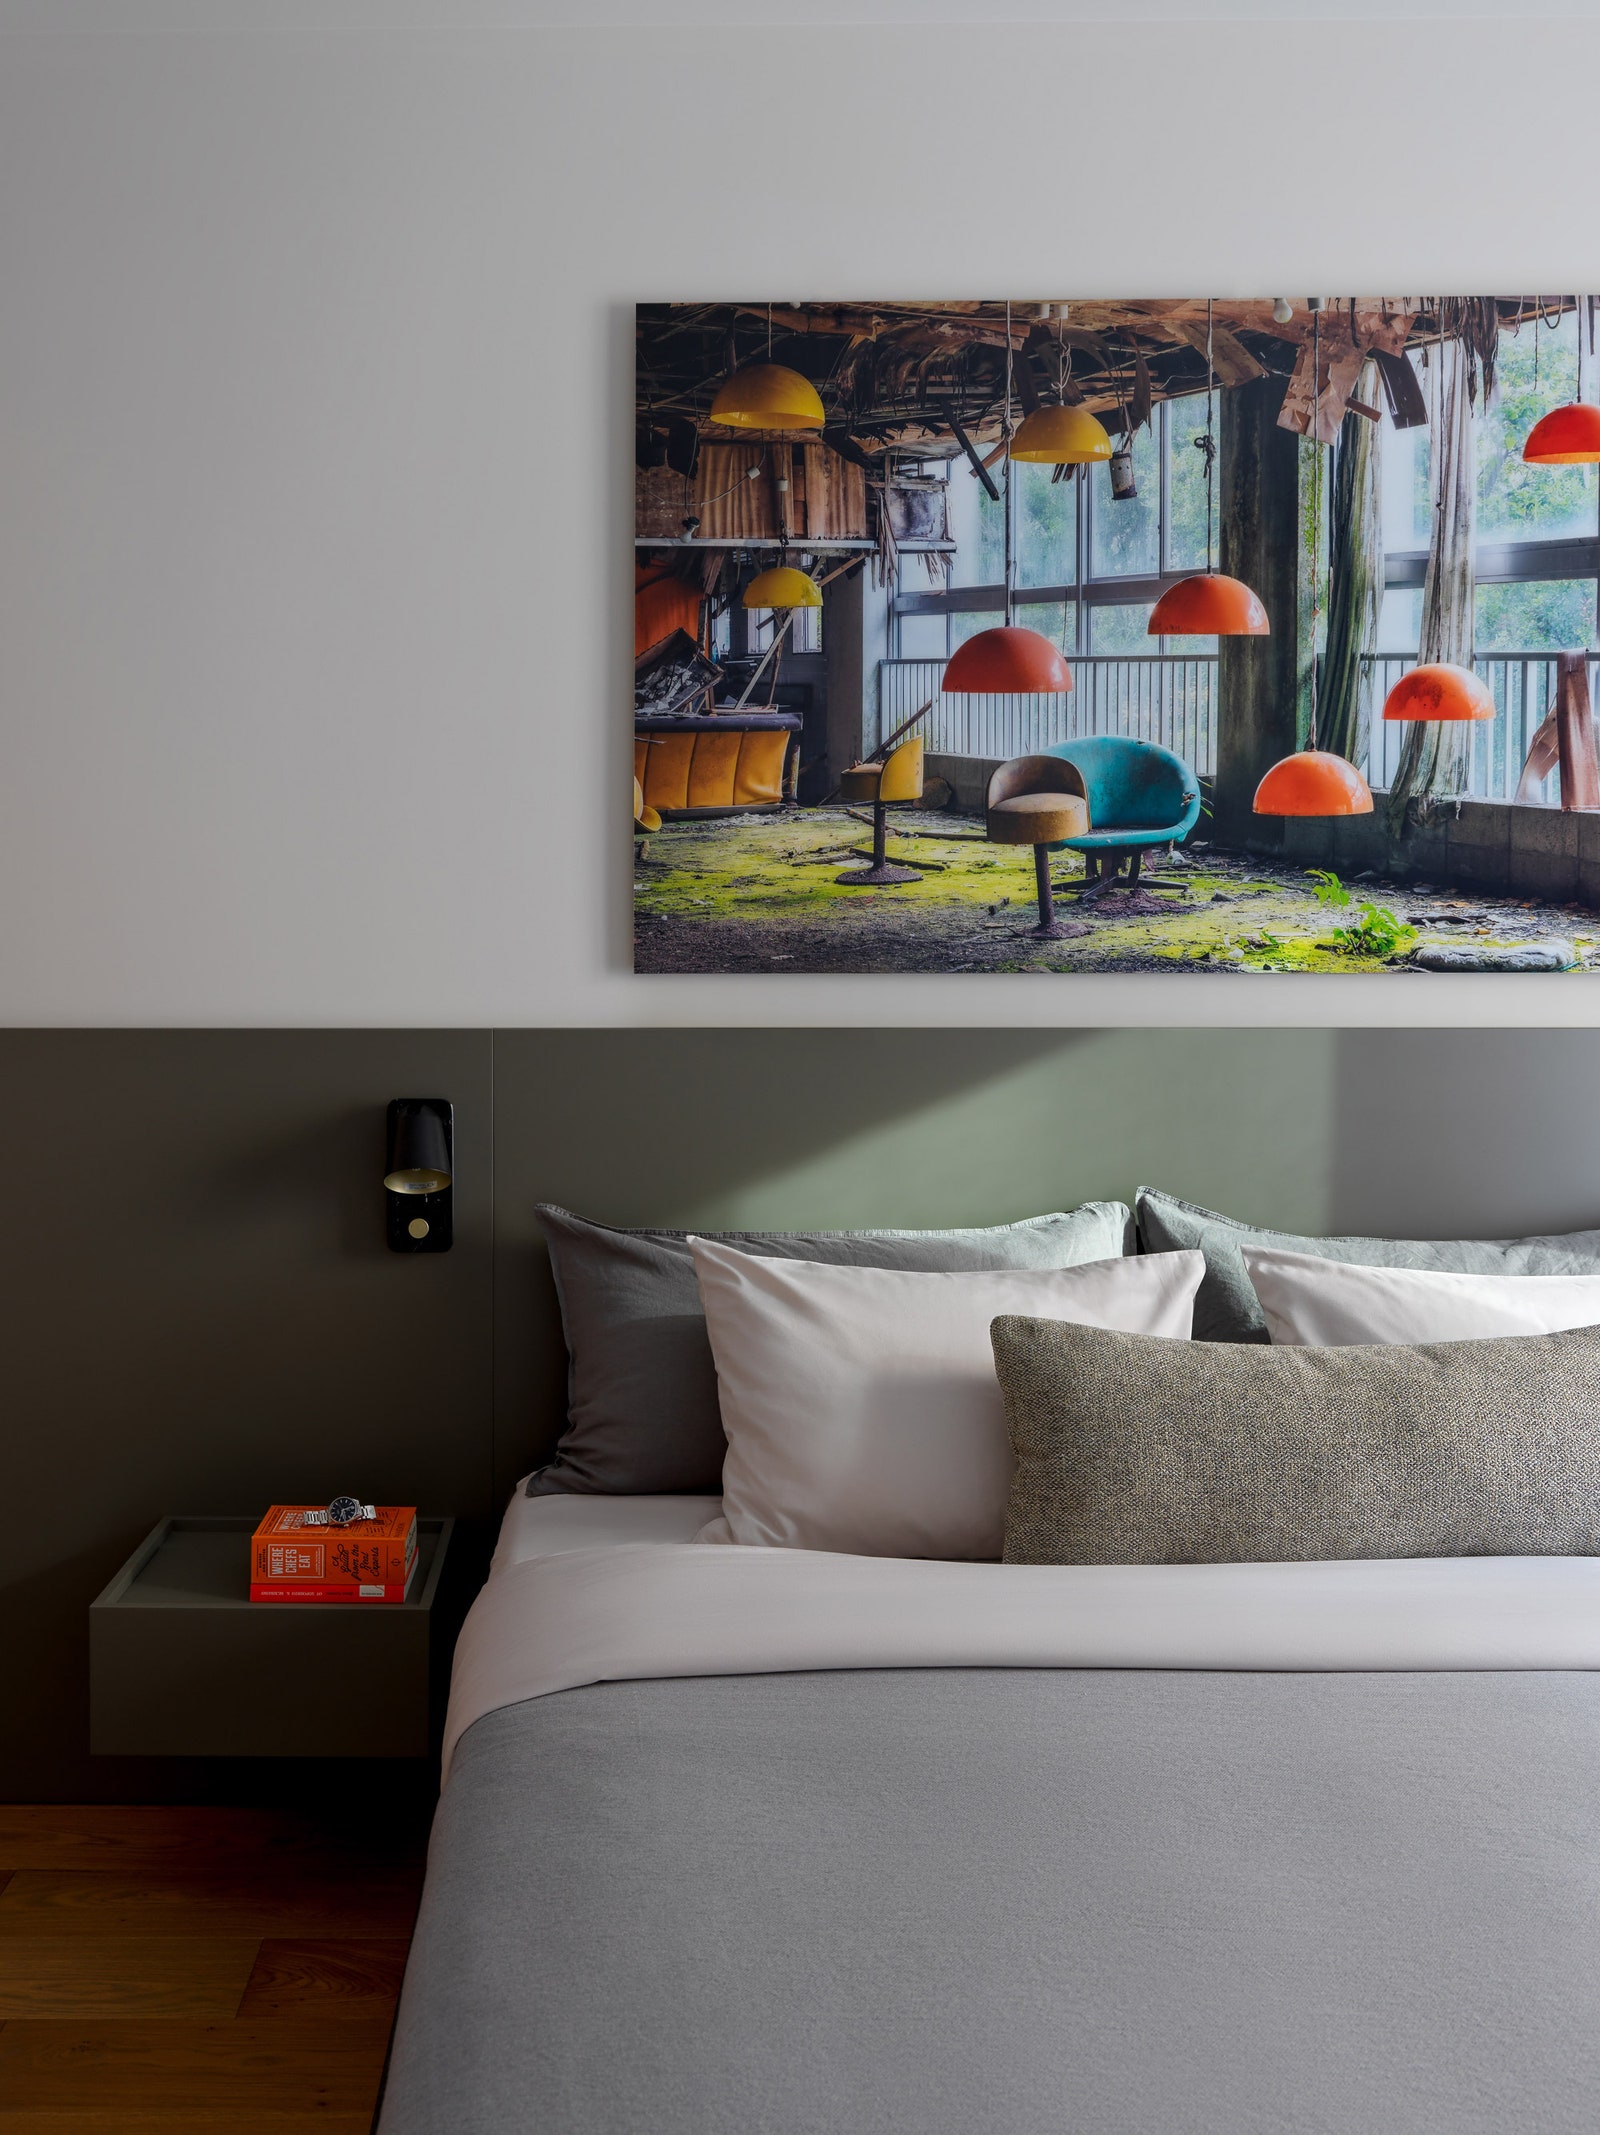 Спальня по проекту дизайнера Анастасии Хальчицкой. Фотография Hotel Seventies Japan Aurelien Villette.